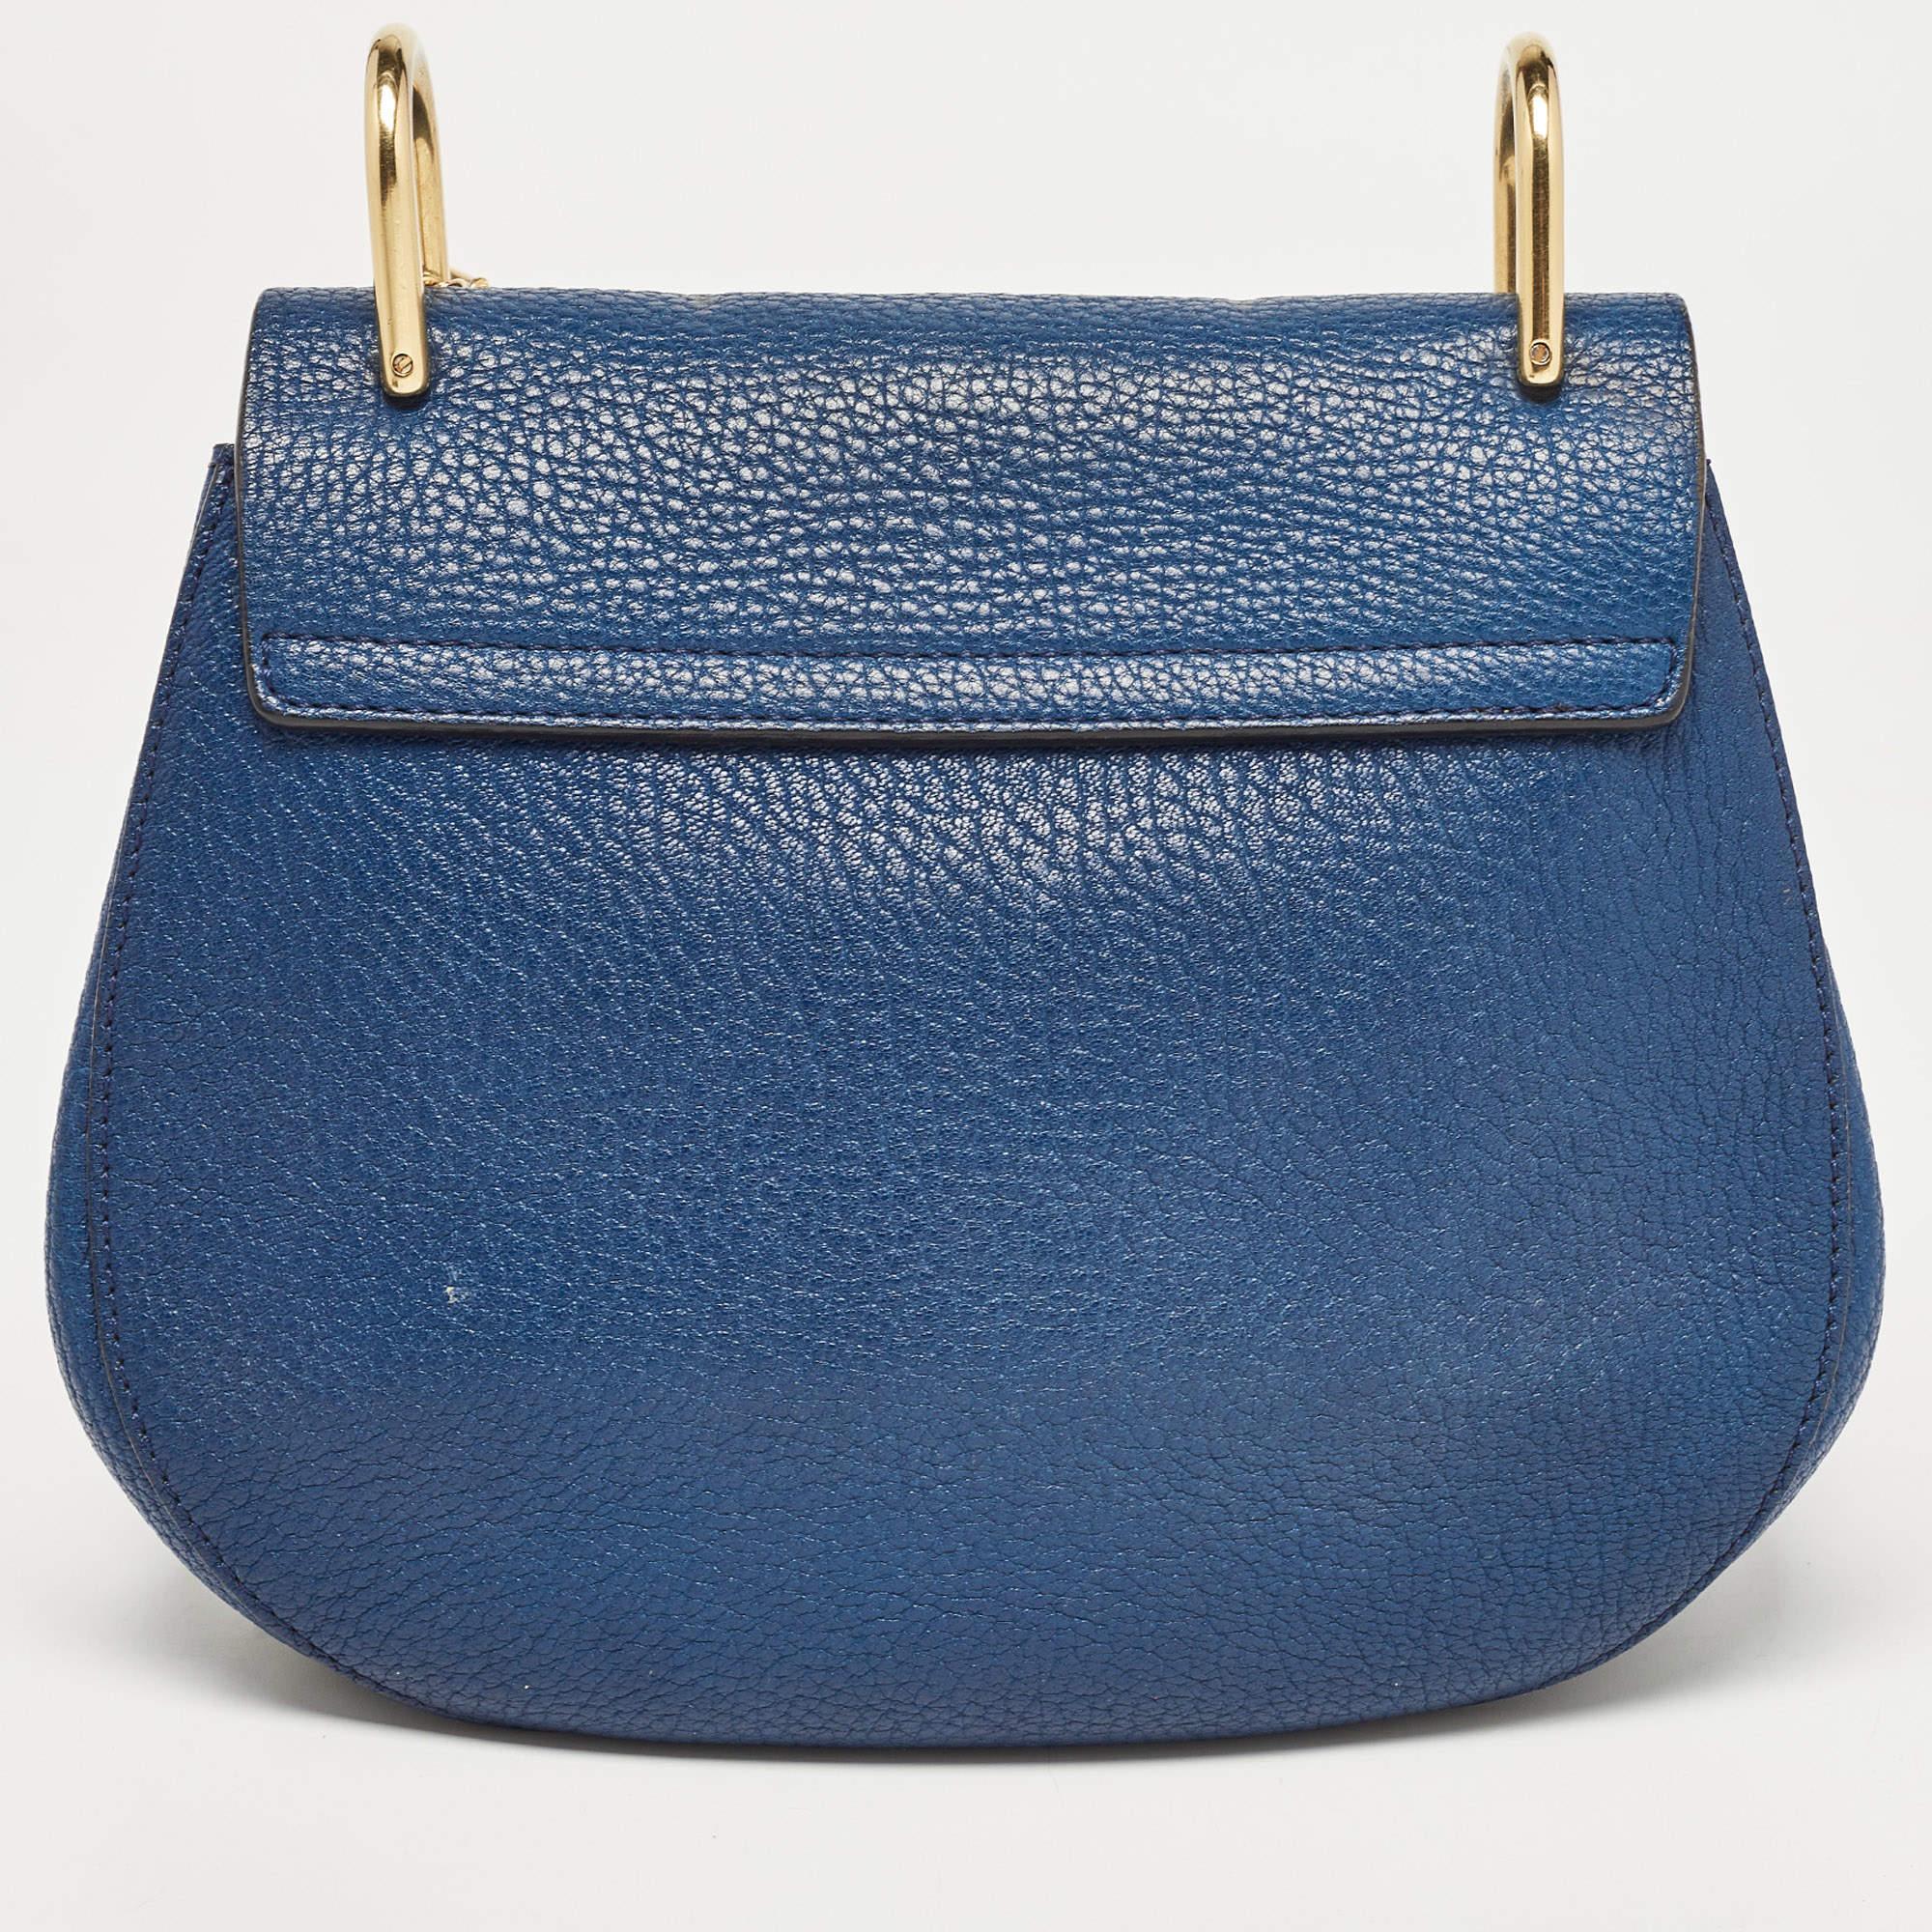 Avec son attrait classique et son design artistique, ce sac Chloé gagnera votre cœur dès le premier regard. Les accents dorés sur l'extérieur de cette création bleue en font une pièce à part dans votre garde-robe. Conçu en cuir, il est doté d'une